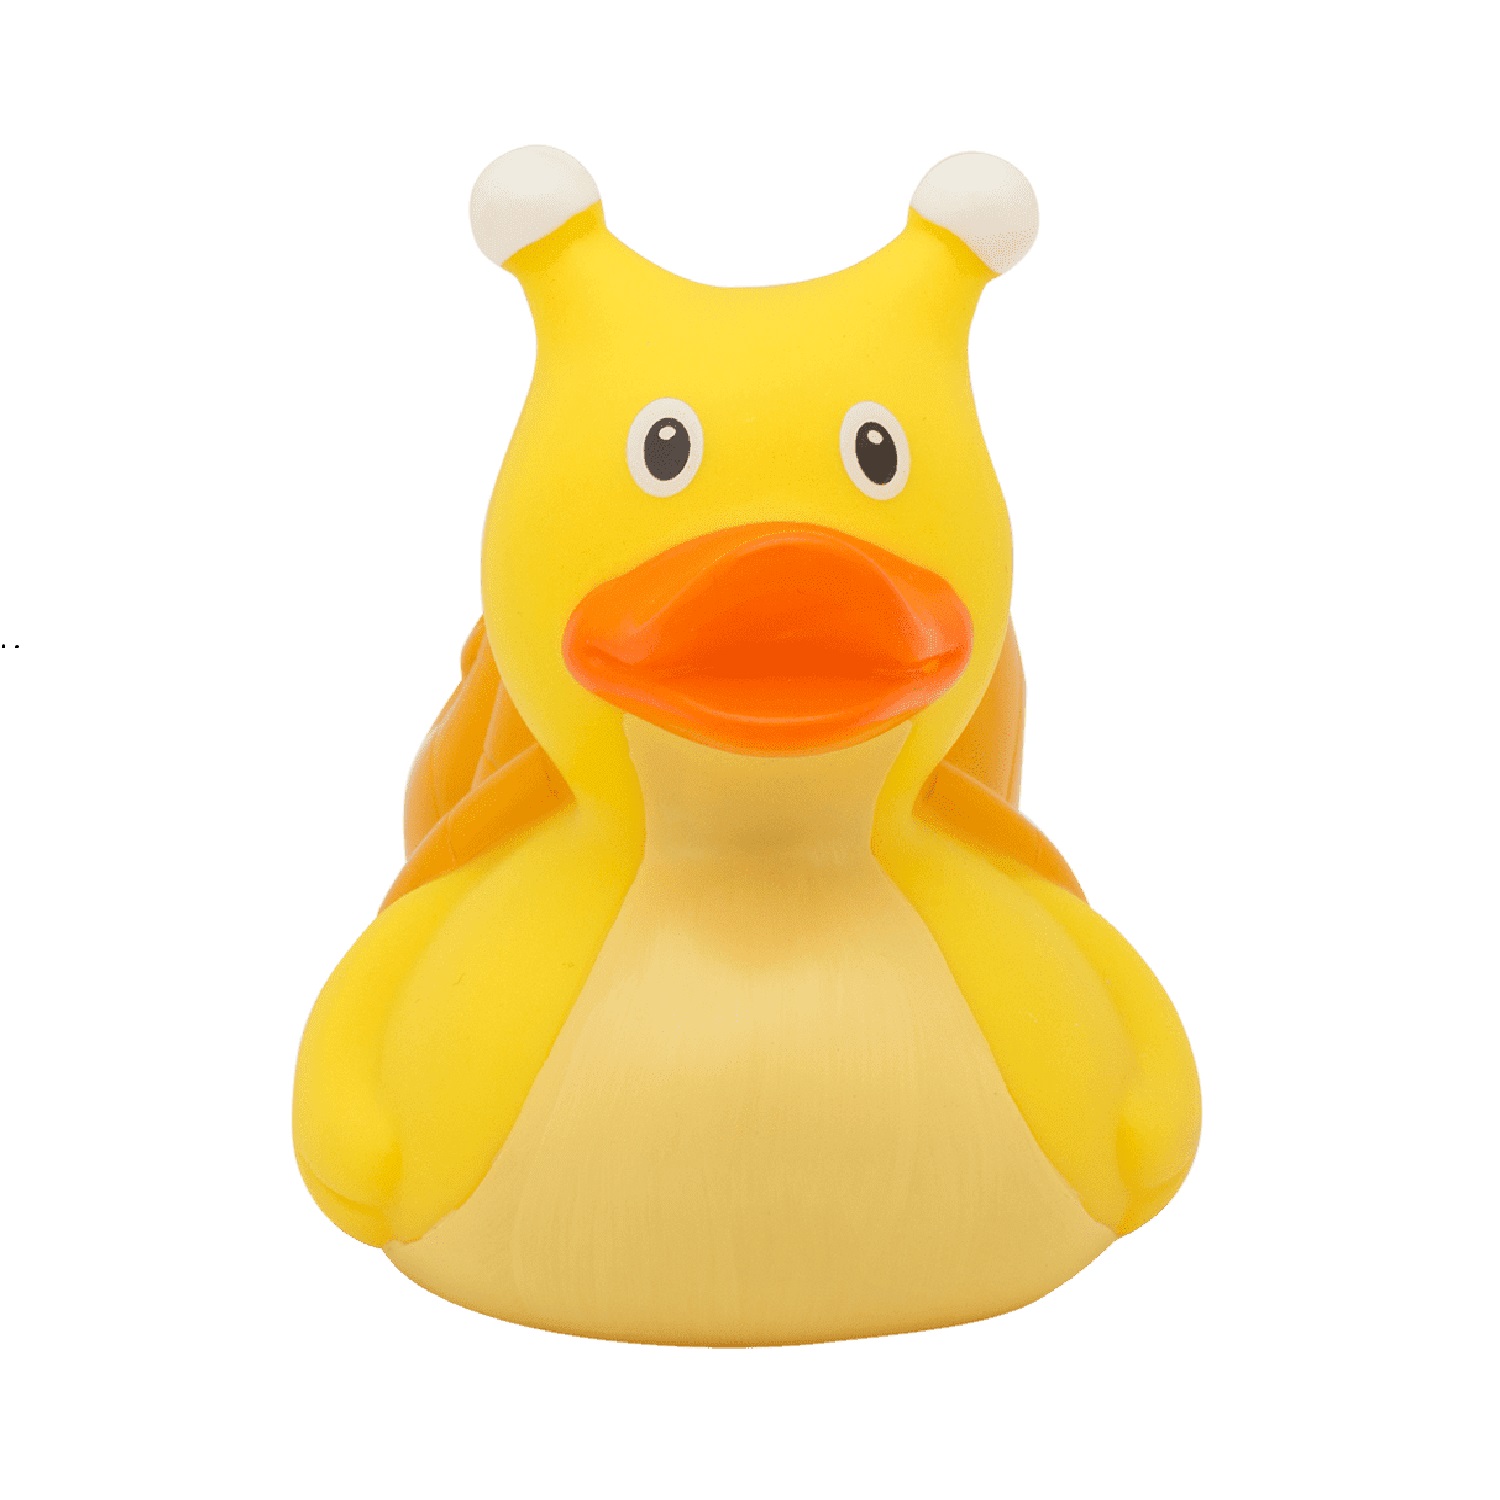 Игрушка Funny ducks для ванной Улитка уточка 1219 - фото 1